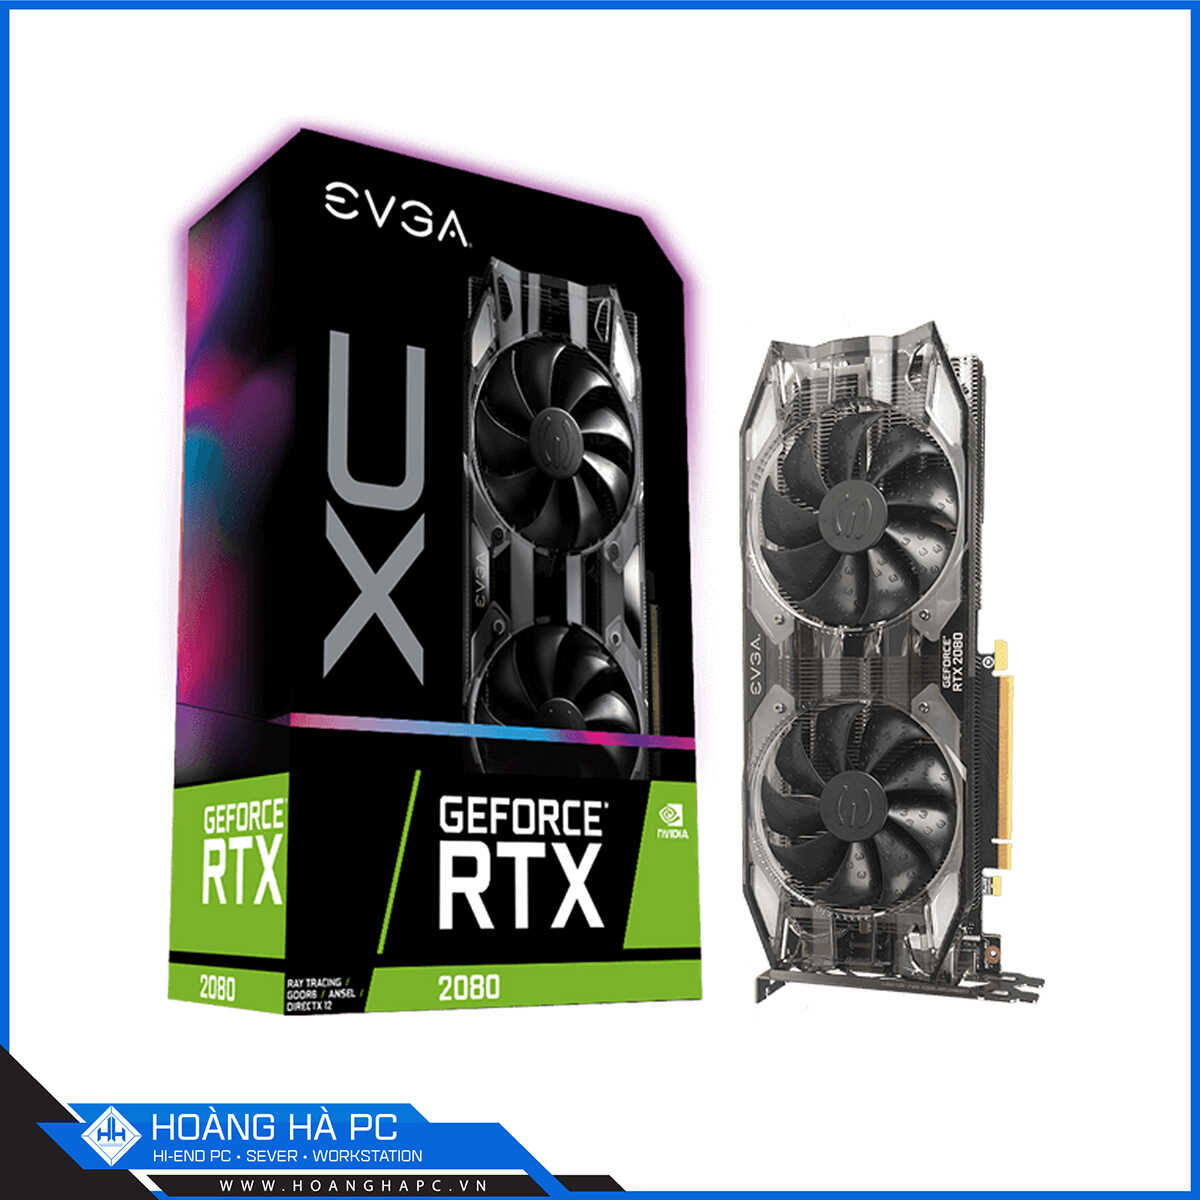 VGA EVGA GeForce RTX 2080 XC GAMING 8GB